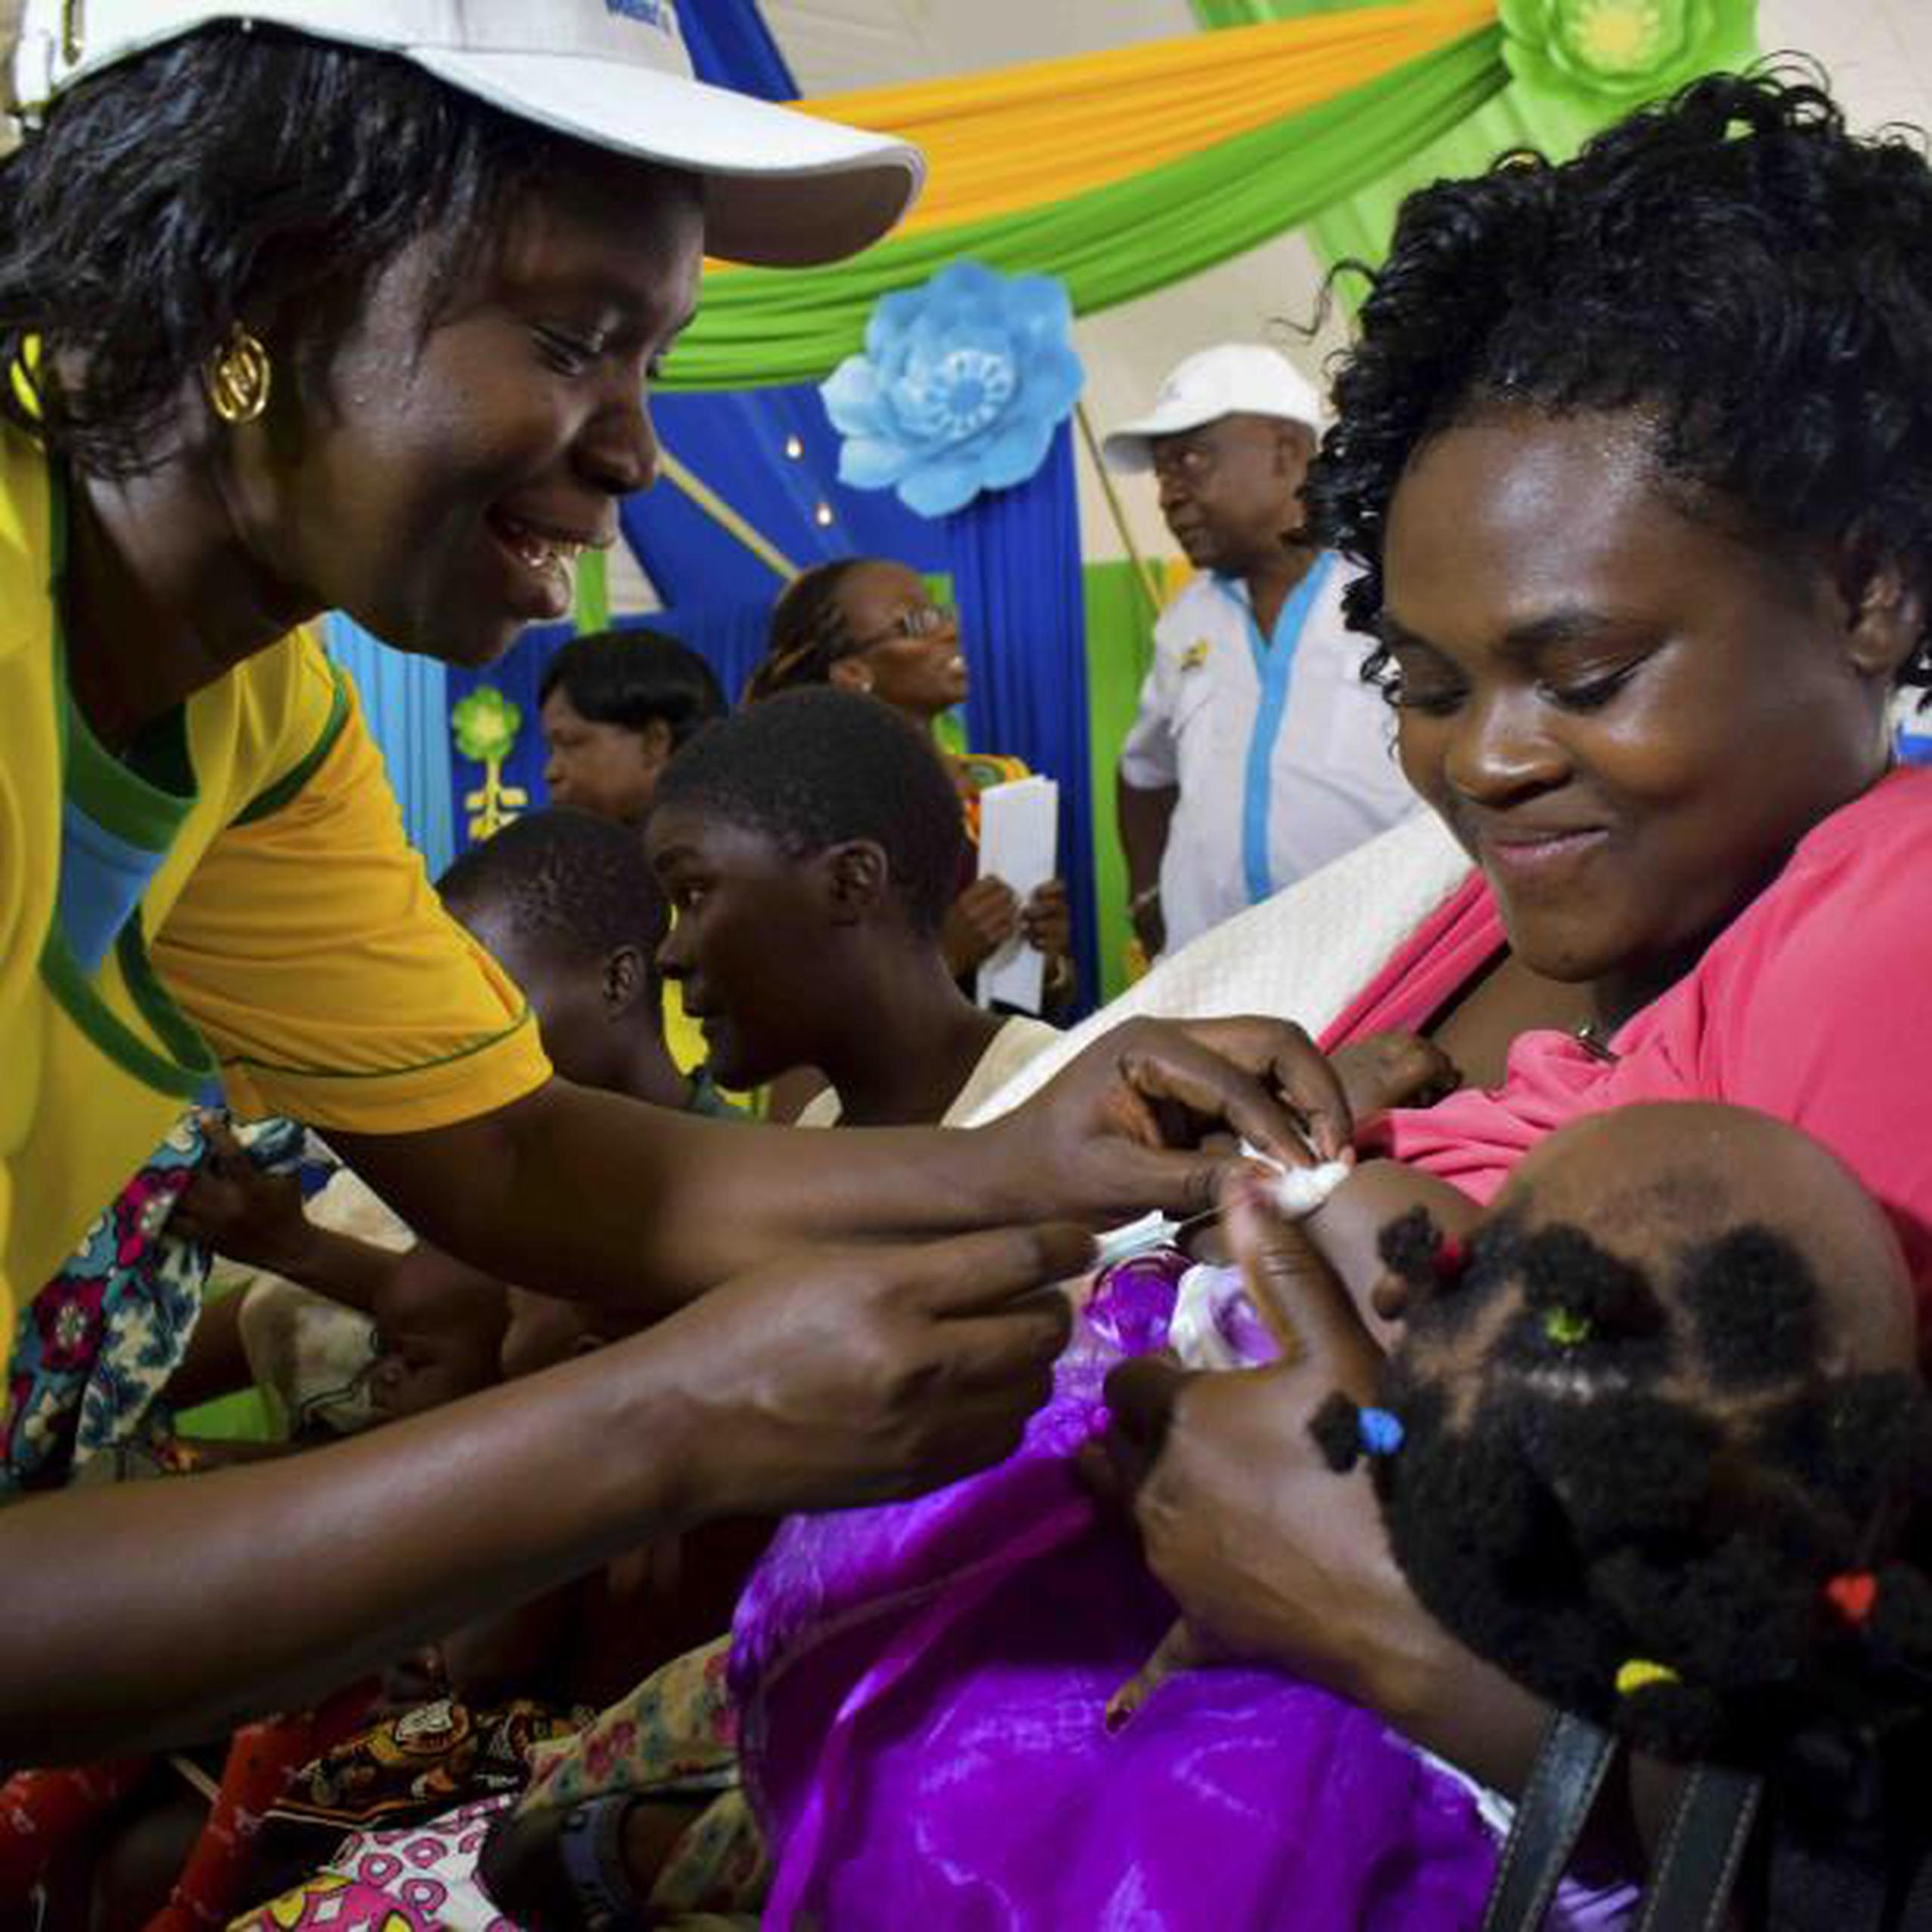 Esta es la primera y única vacuna que reduce significativamente la malaria entre los niños, dijo la Organización Mundial de Salud. (AP)